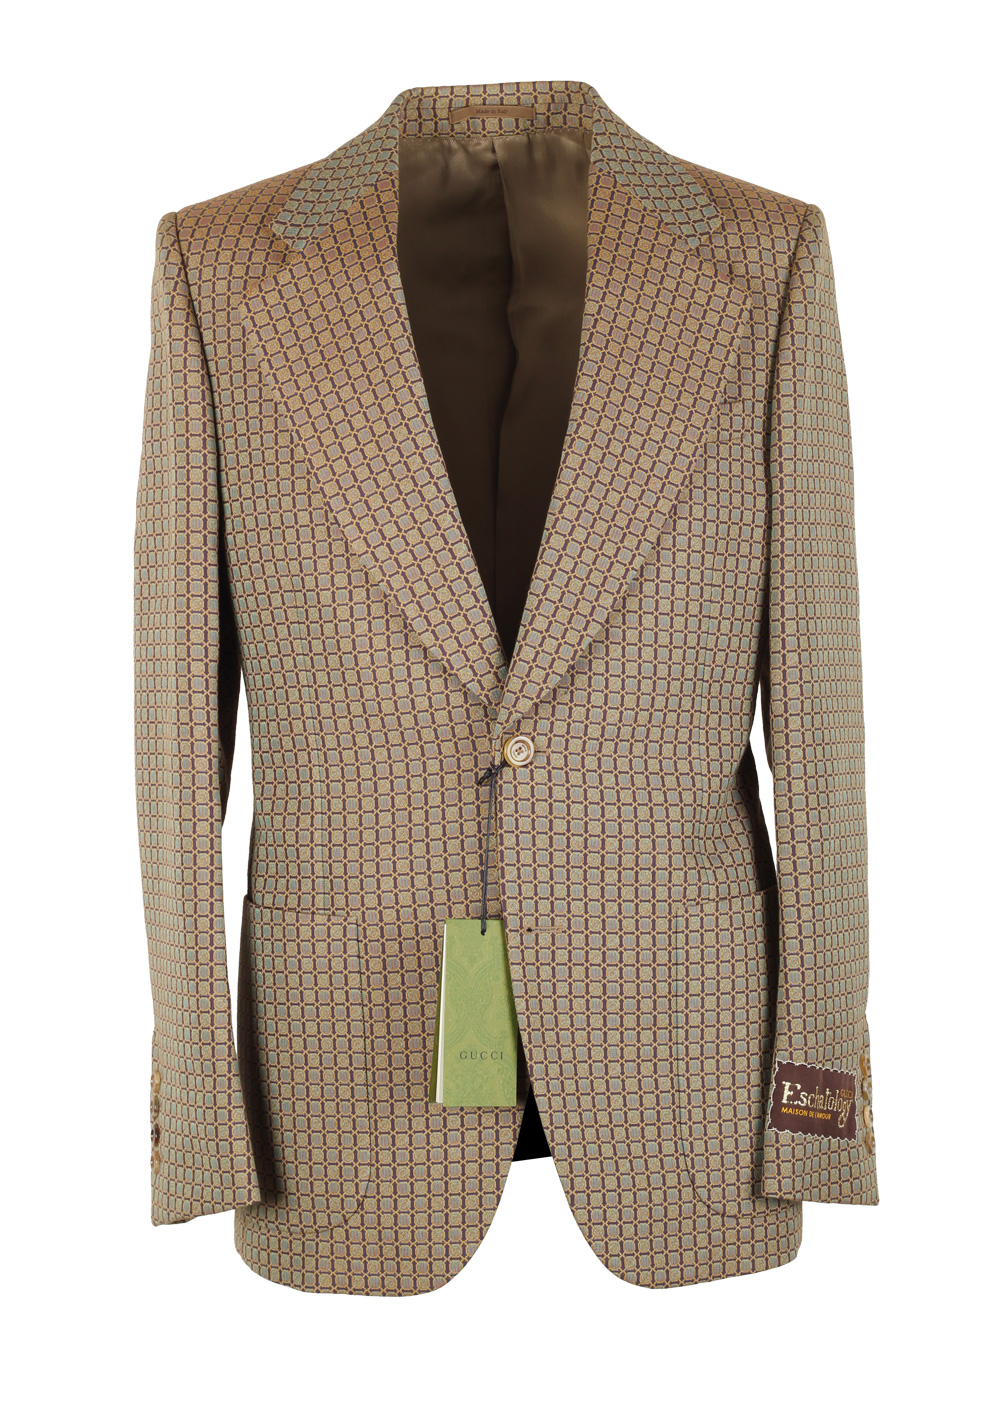 Gucci Beige Patterned Signature Blazer Sport Coat Size 46 / 36R U.S. | Costume Limité